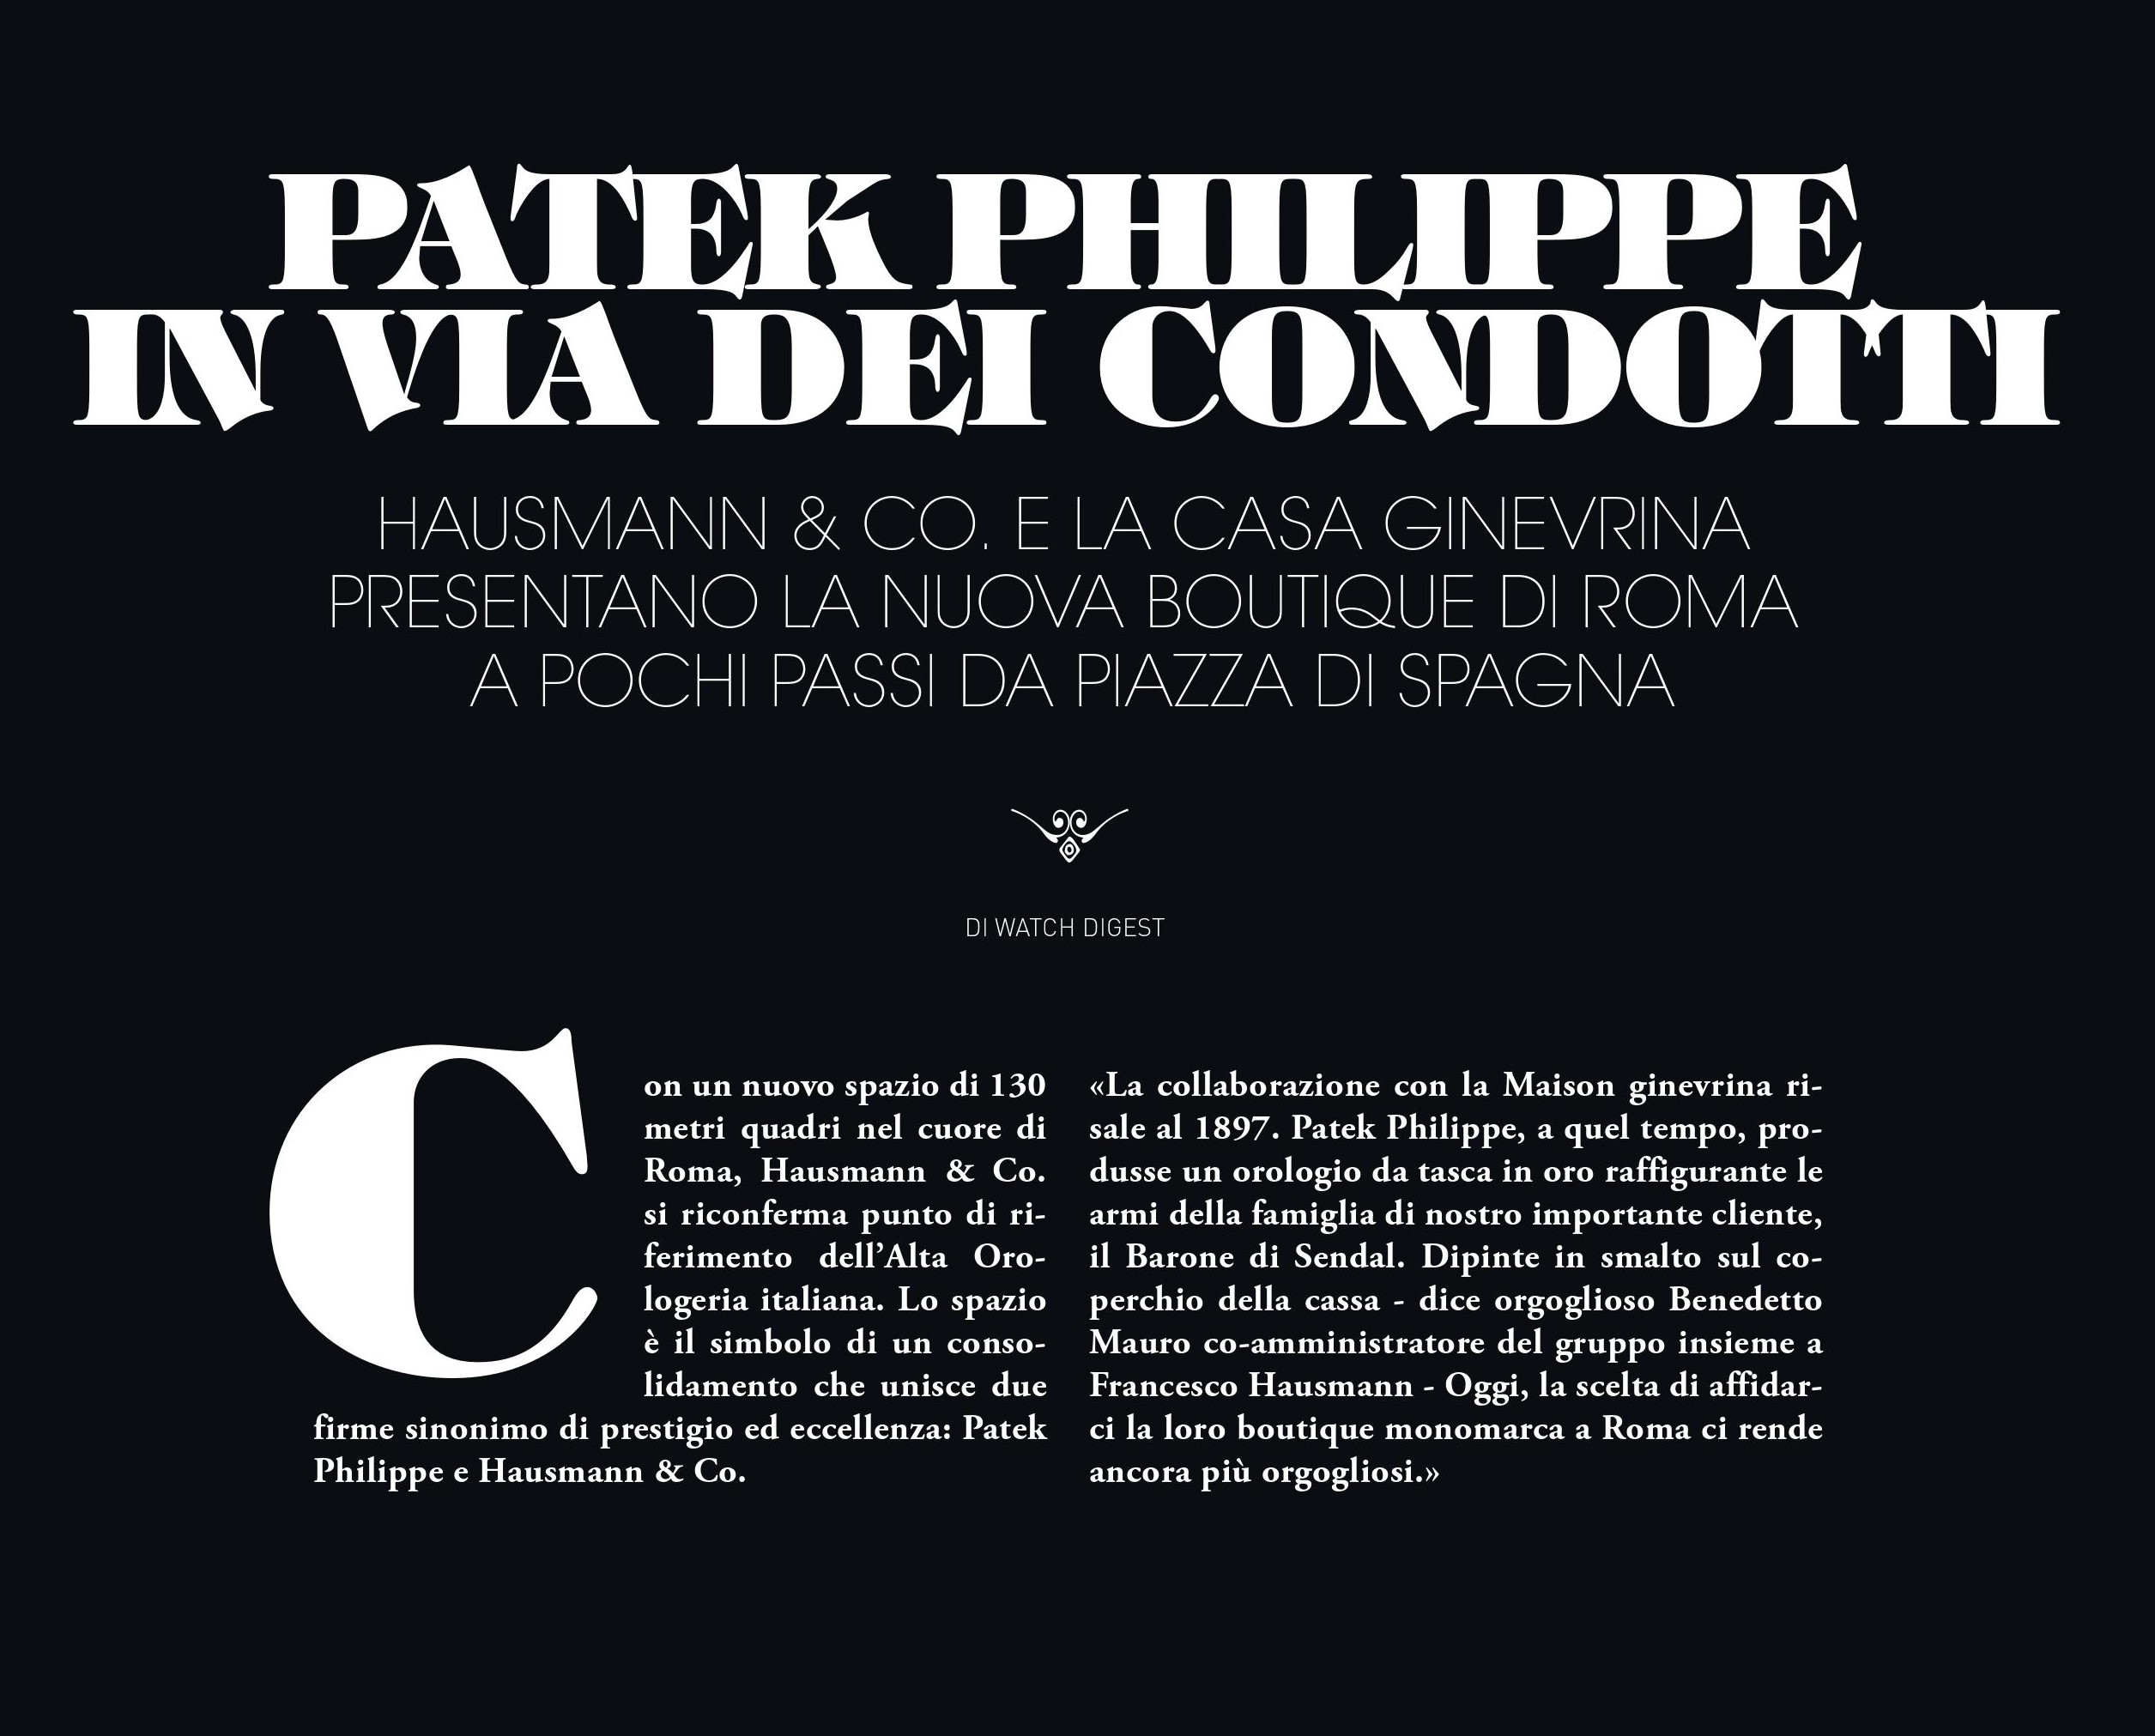 La nuova boutique Patek Philippe e la collezione dedicata a Roma protagoniste della stampa